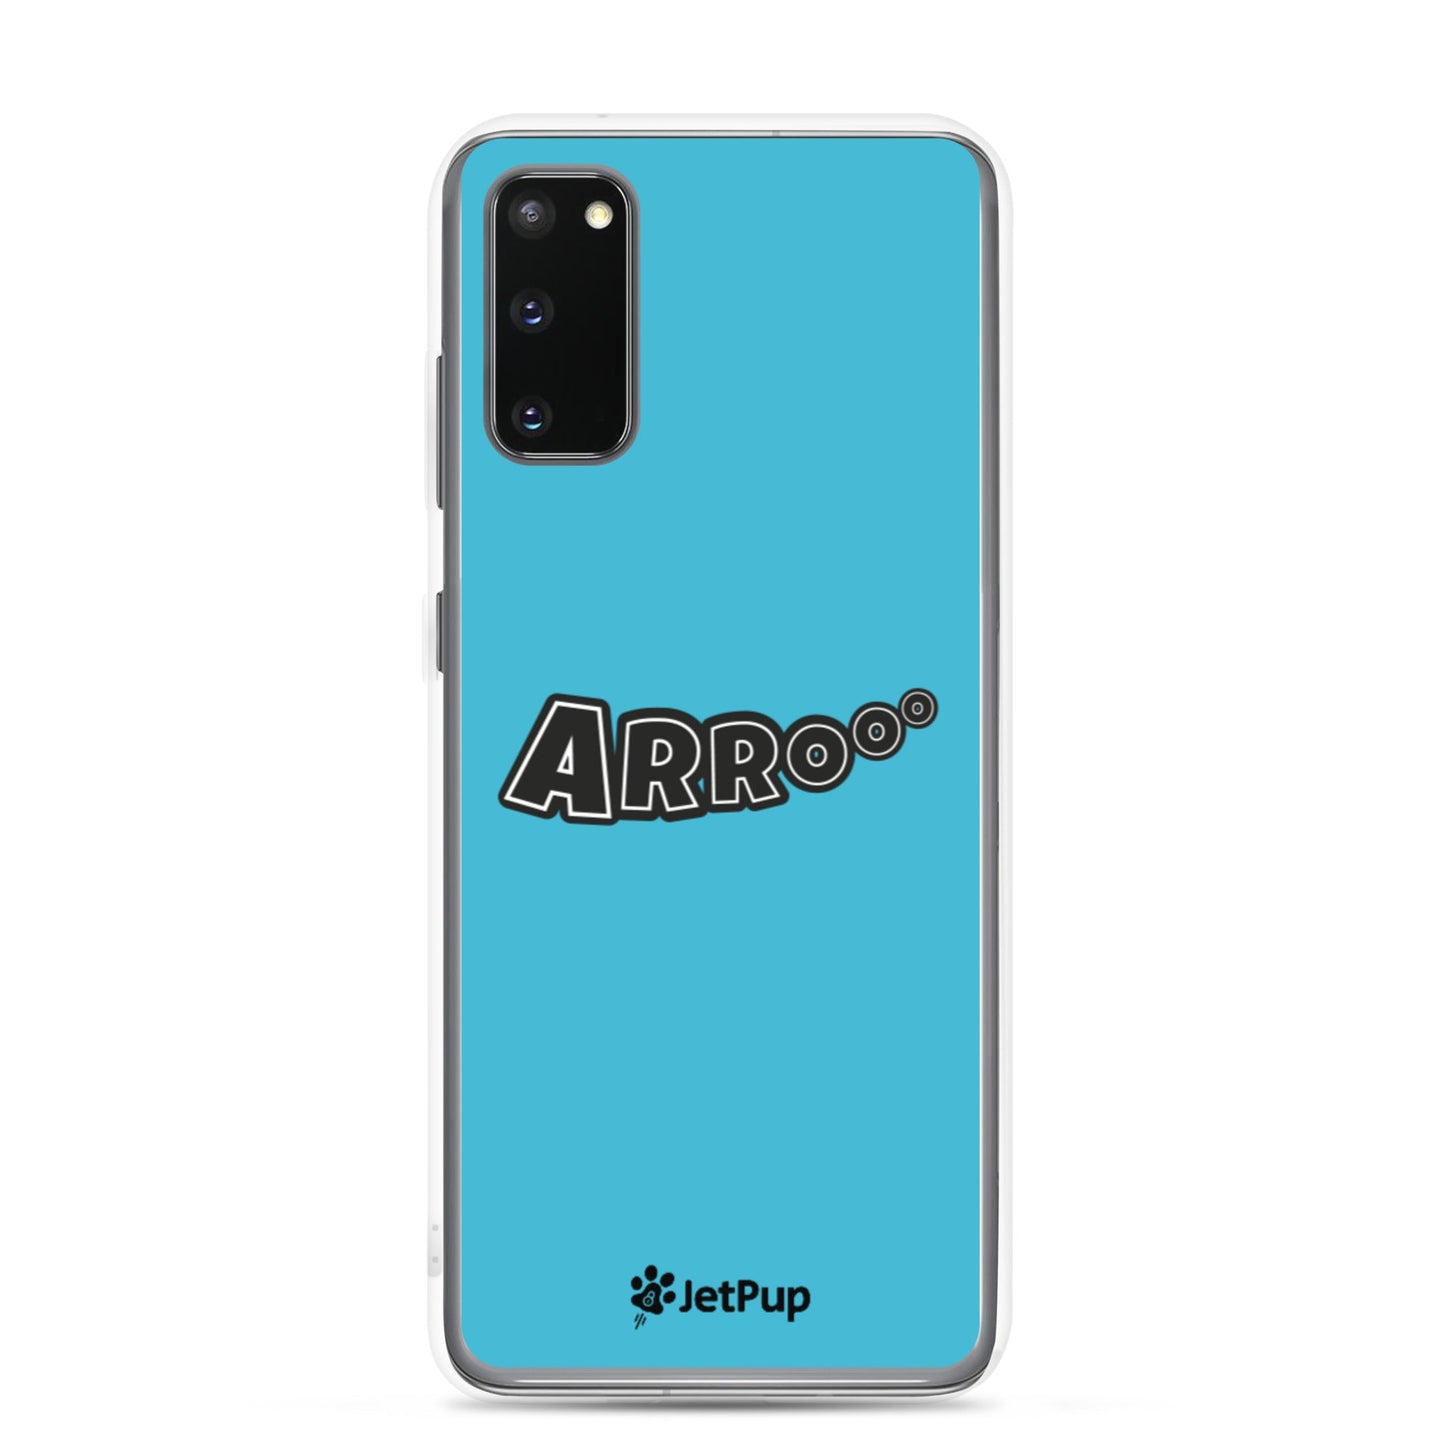 Arrooo Samsung Case - Sky Blue - JetPup